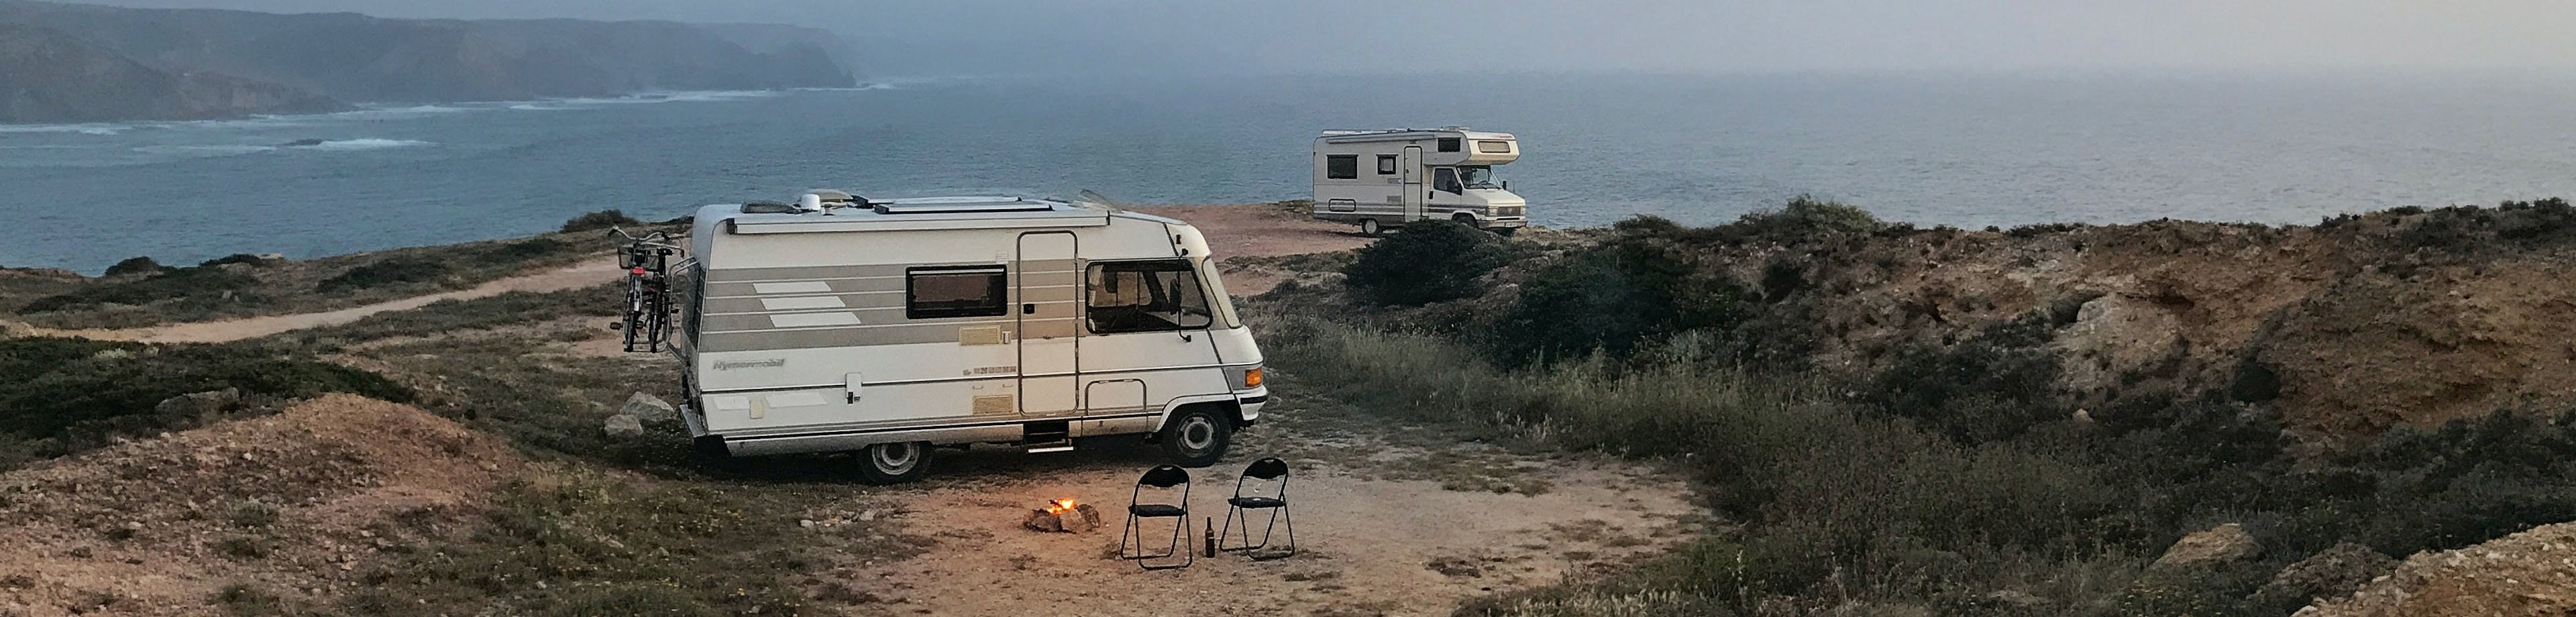 Twee campers op een camping met uitzicht op zee